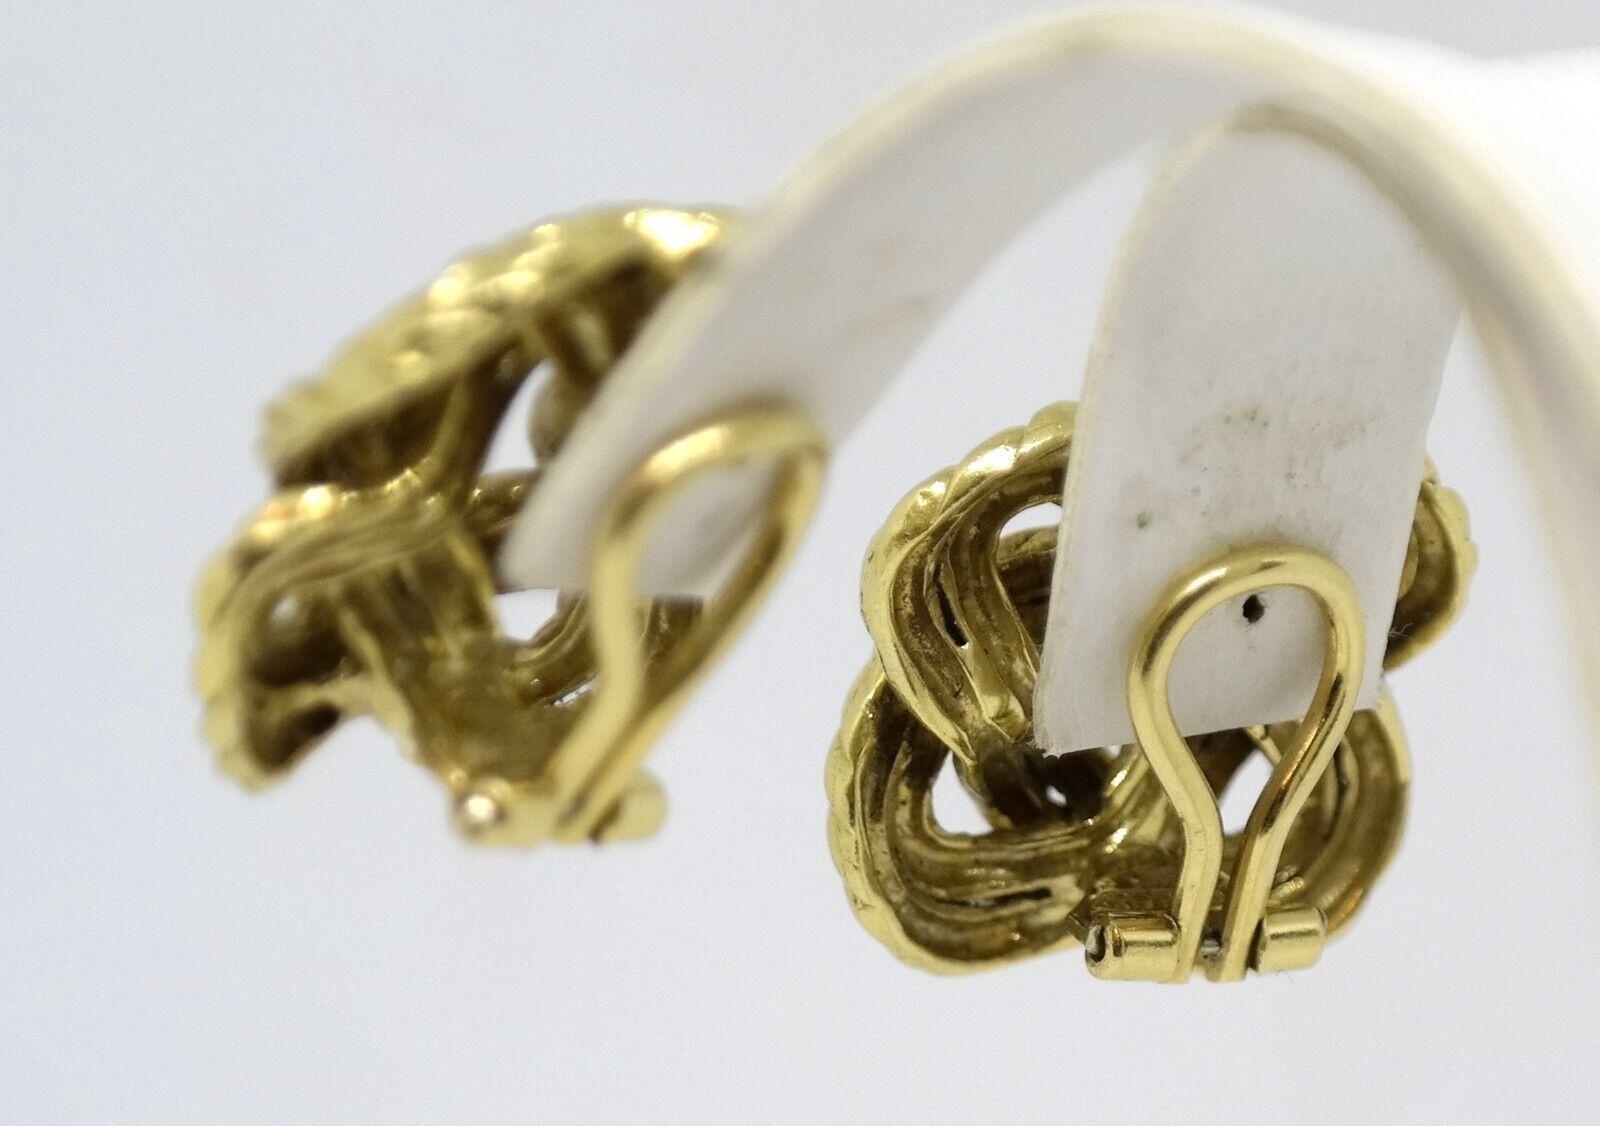 Tiffany & Co. Italien 18k Gelbgold Knoten Motiv Clip auf Ohrringe Vintage CIRCA 1970s

Hier haben Sie die Chance, ein wunderschönes Designer-Ohrringpaar mit hohem Sammlerwert zu erwerben.  

Die Ohrringe stammen aus den 1970er Jahren und haben ein